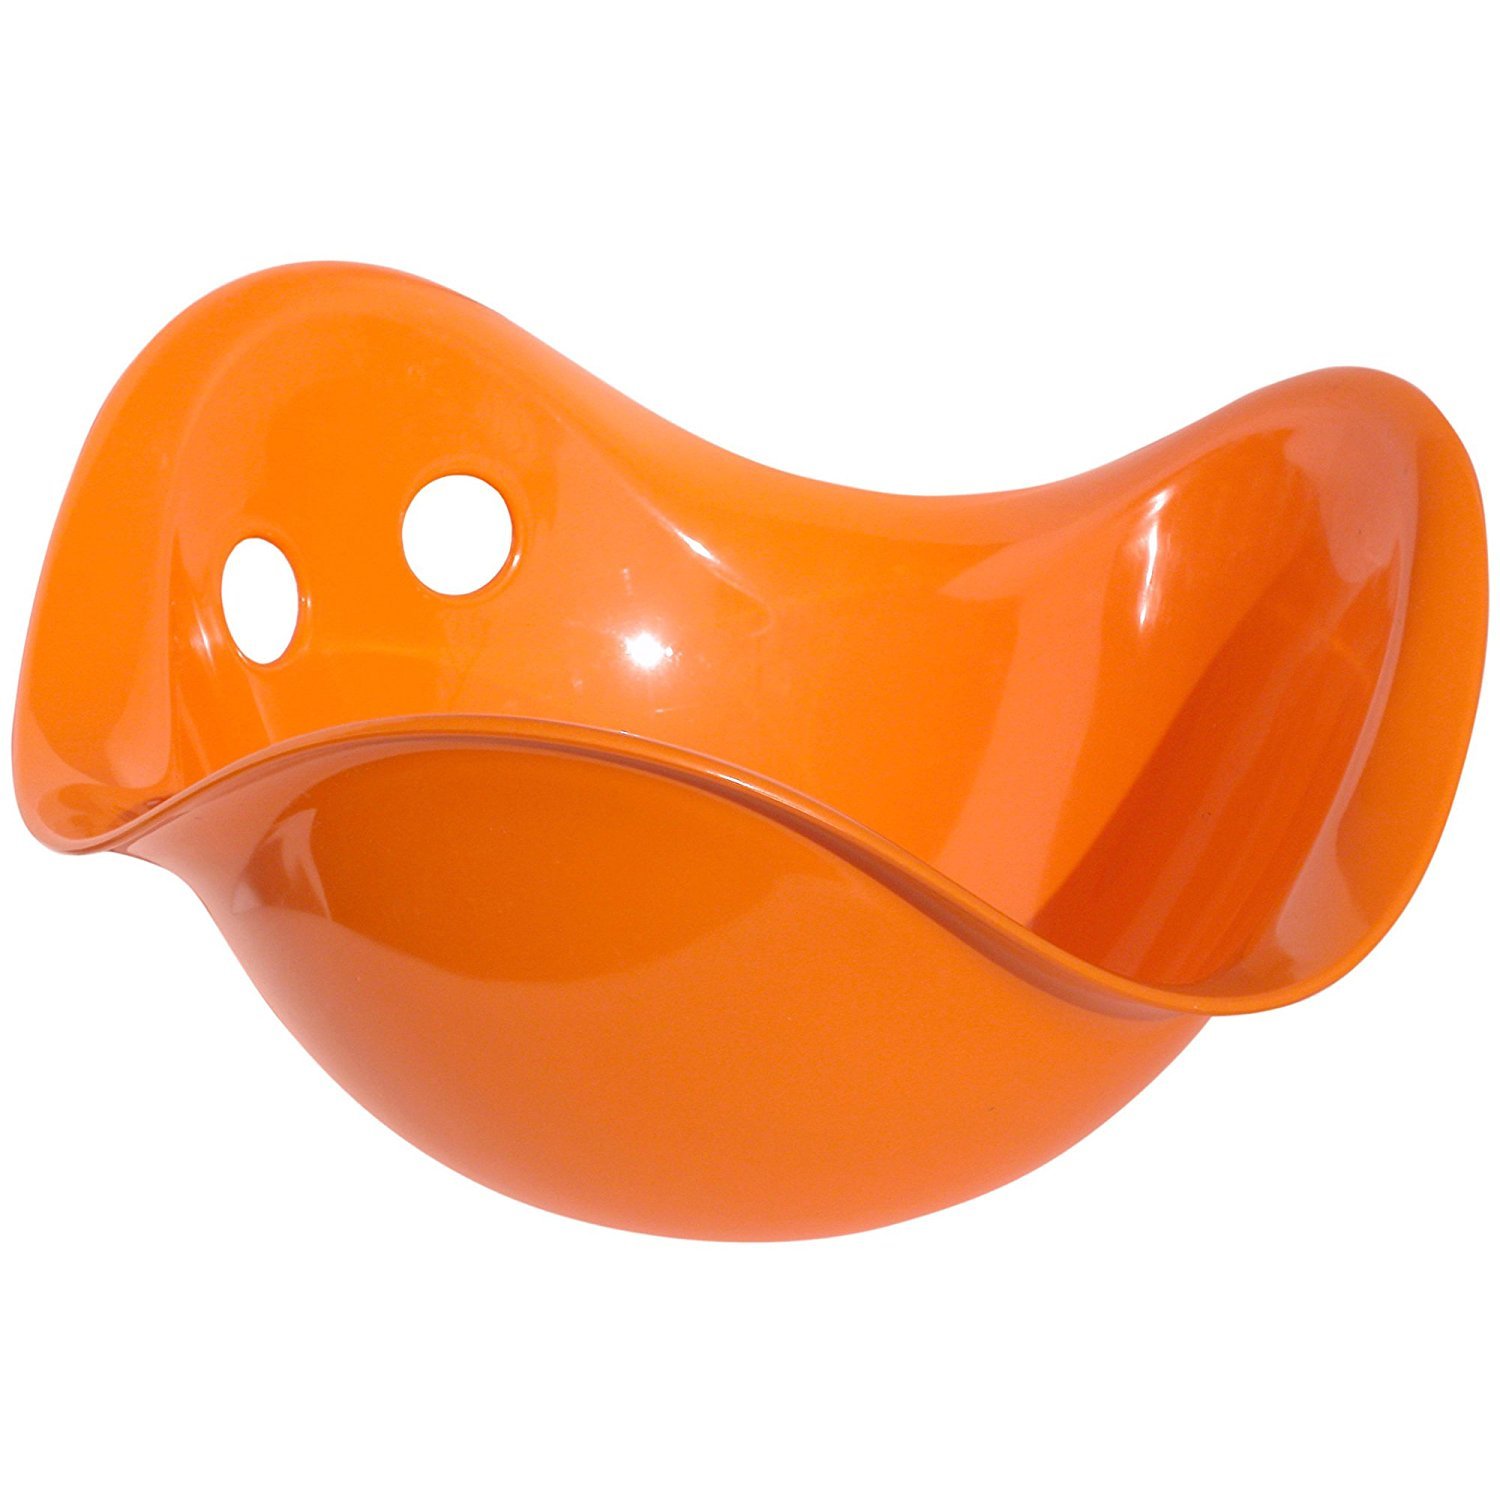 Развивающая игрушка Moluk Билибо, оранжевая (43006) - фото 1